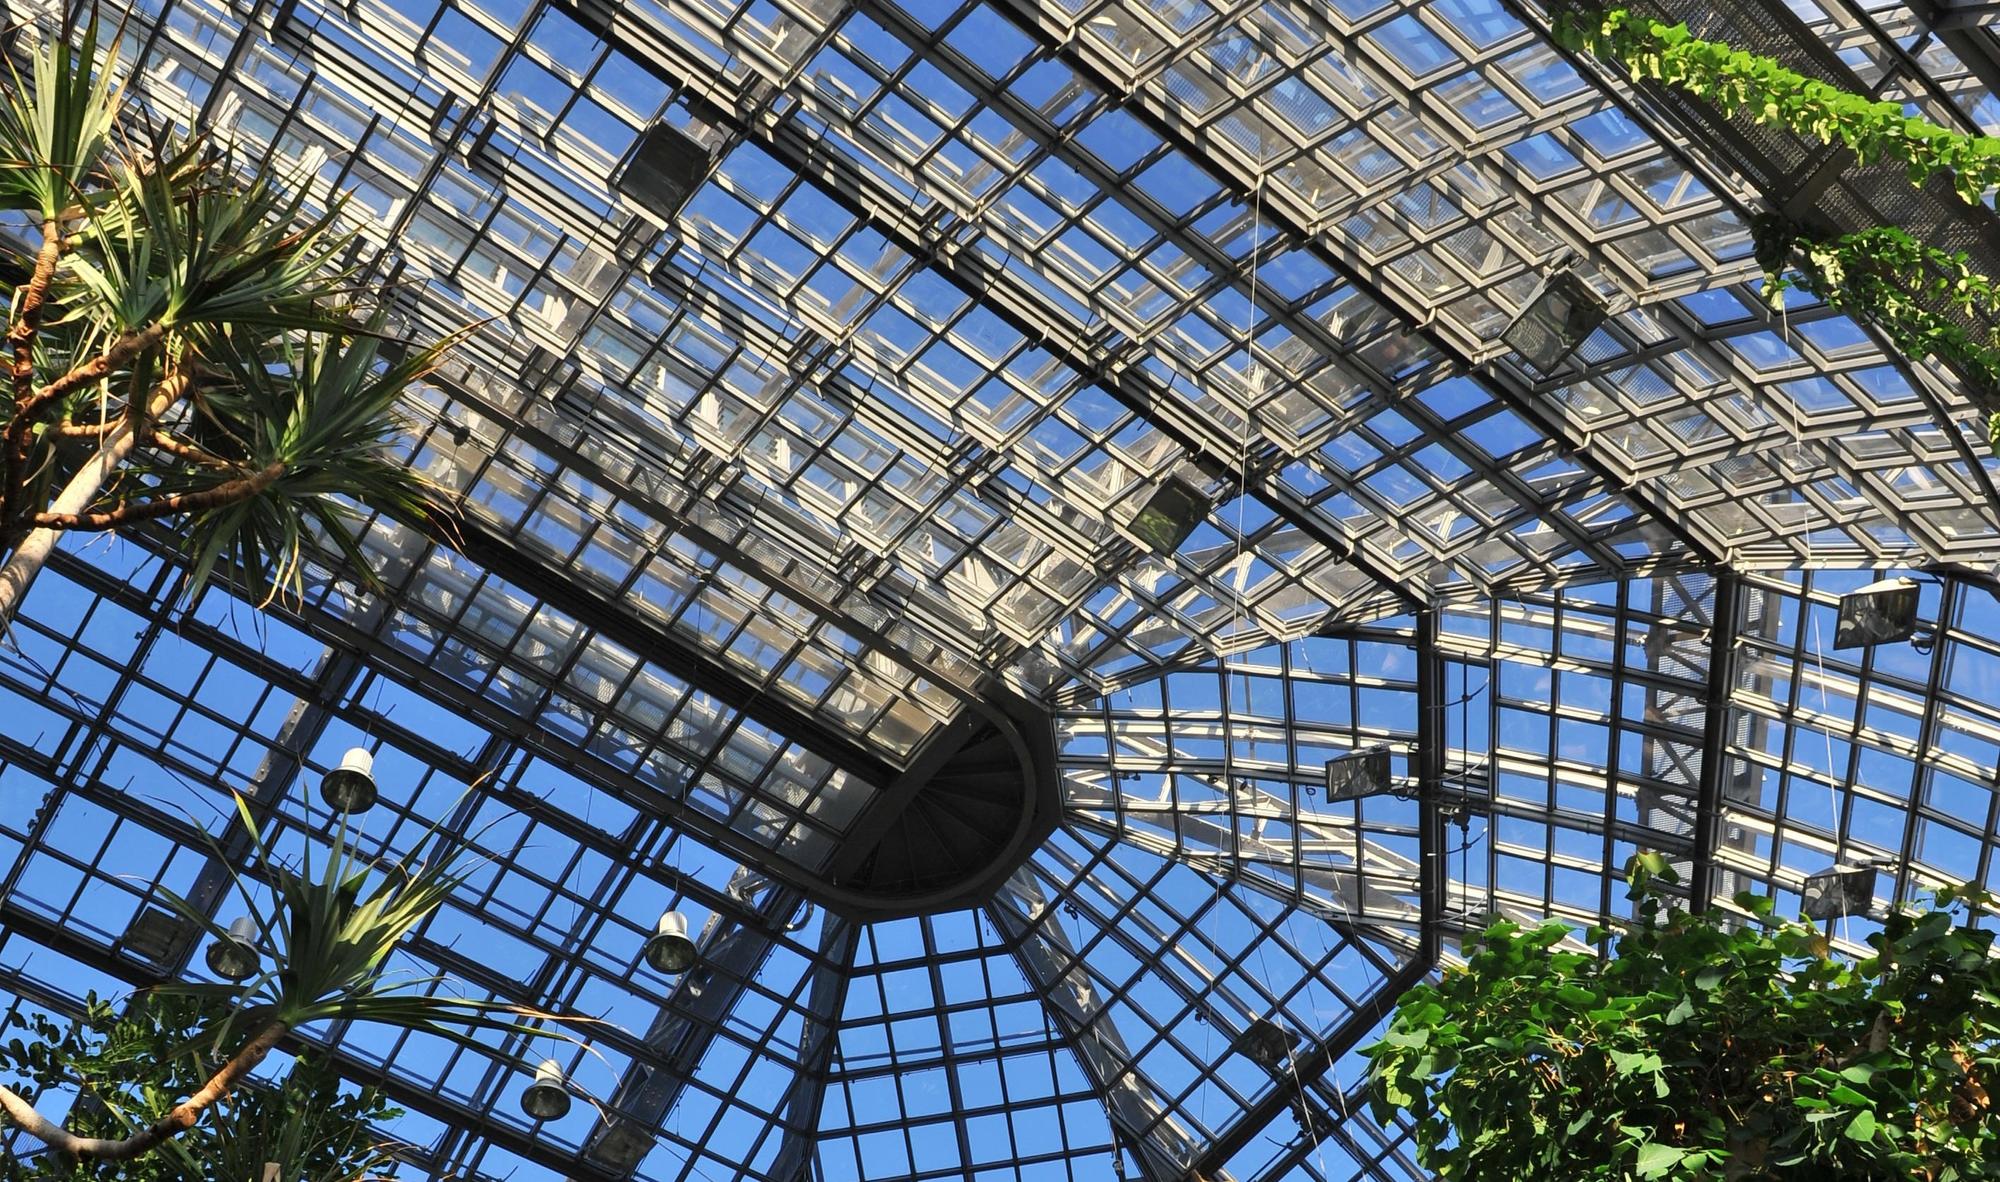 Das große Tropenhaus des Botanischen Gartens in Berlin-Dahlem befindet sich in fußläufiger Entfernung zum Gebäude des GRKs.